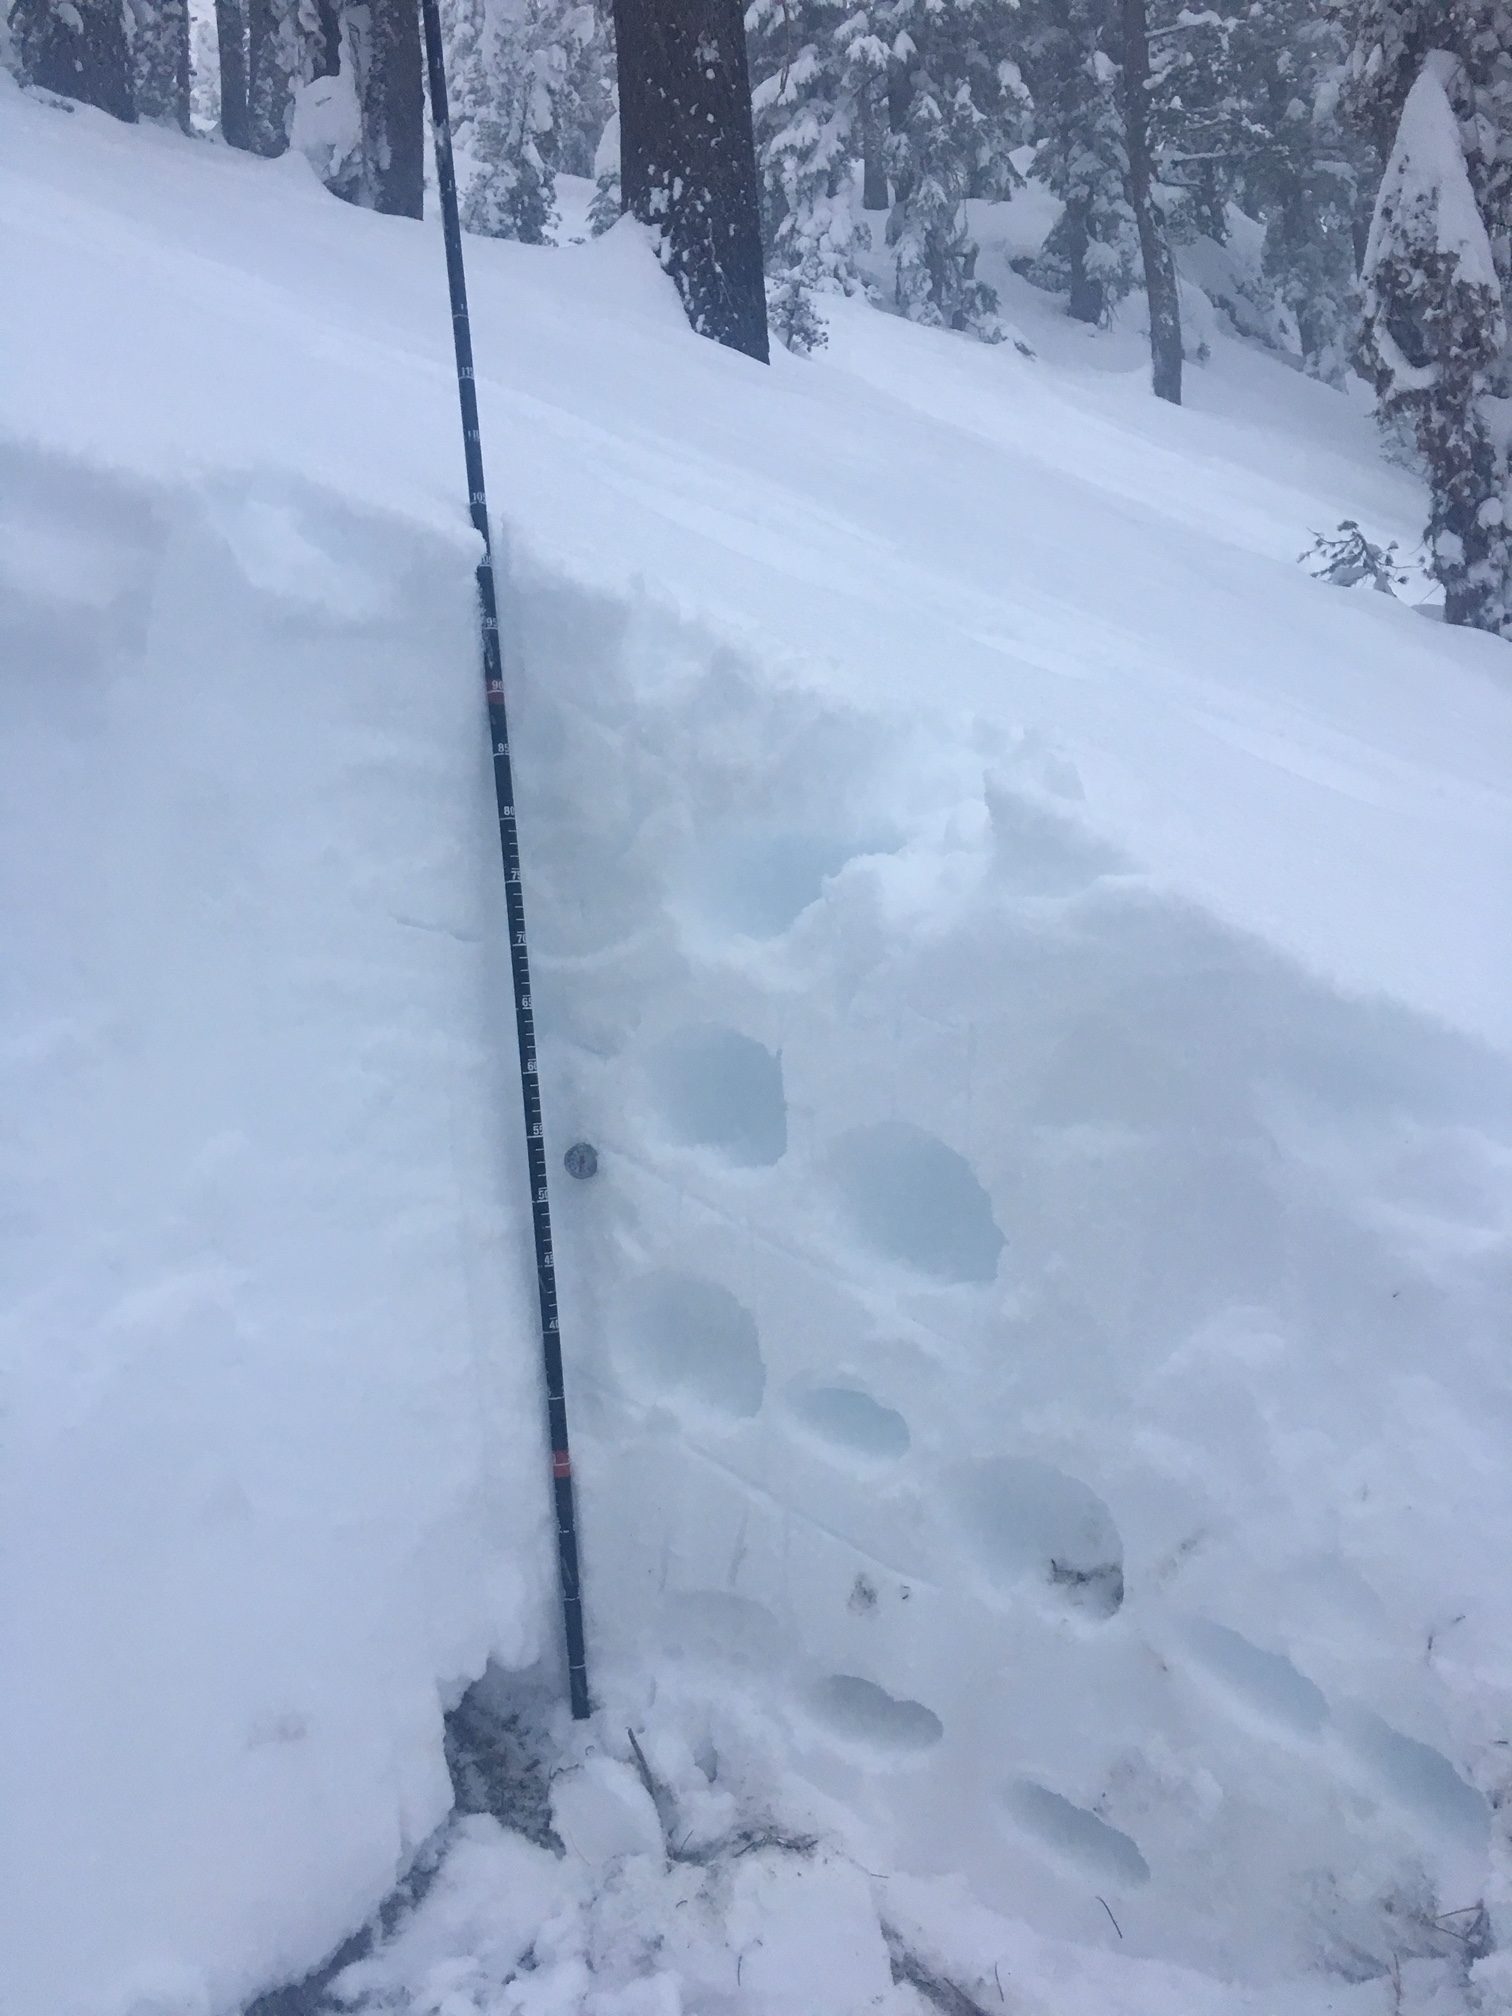 Sierra snowpack